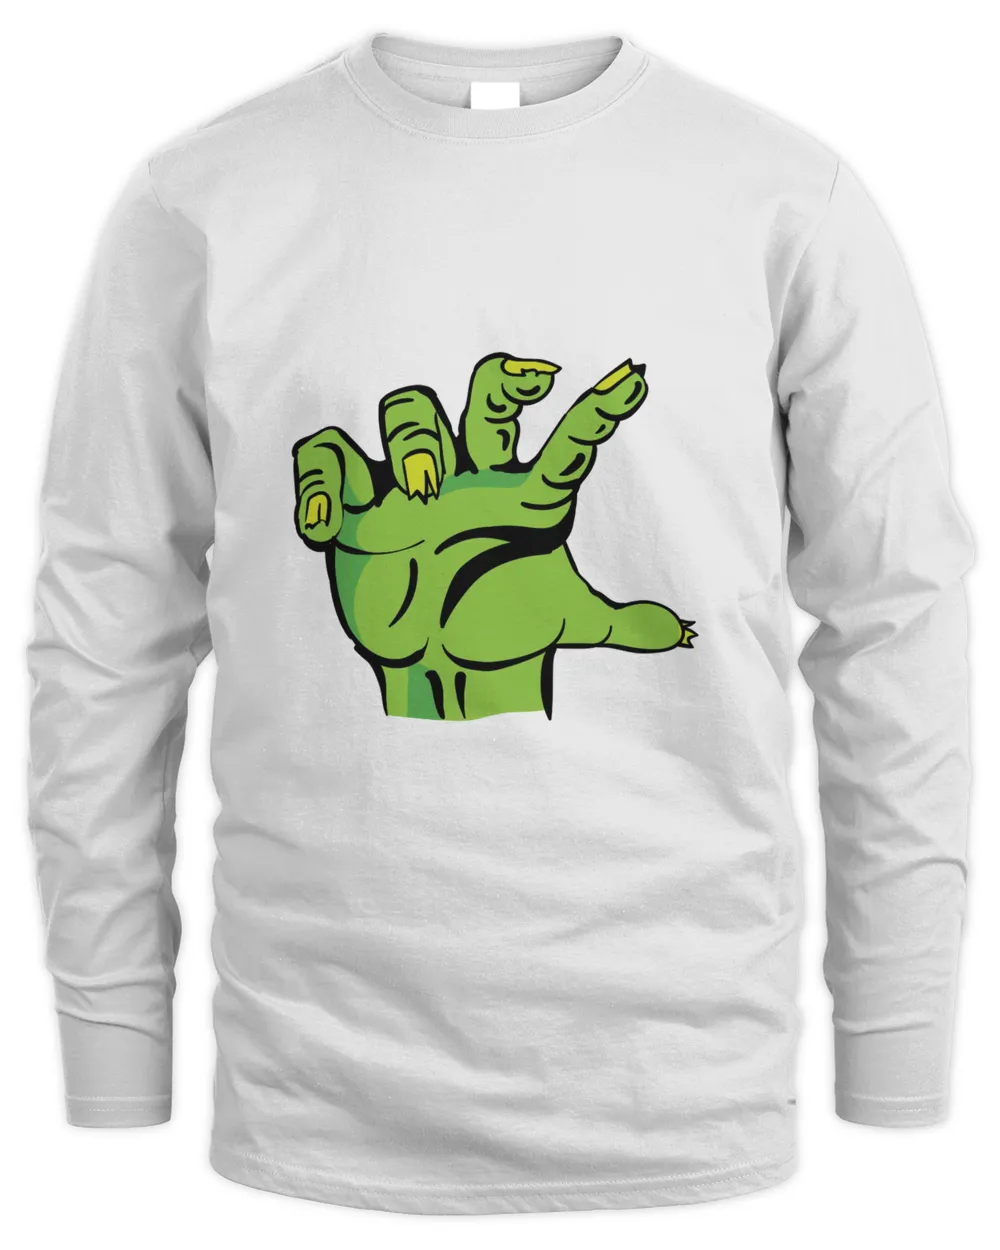 Zombie Hand t shirt hoodie sweater